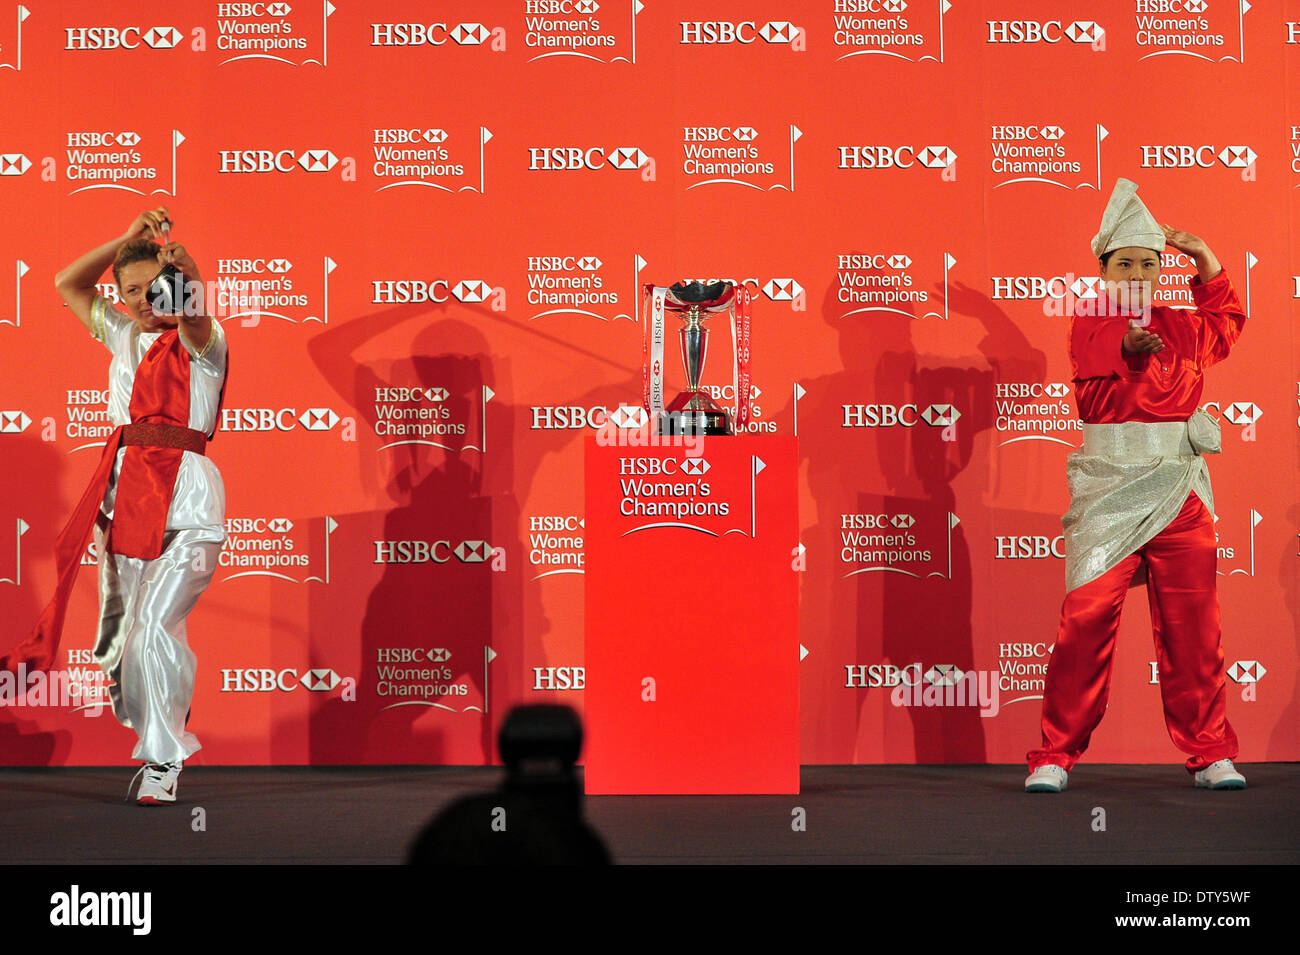 Singapour. Feb 25, 2014. Inbee Park (R) de la Corée du Sud et Suzann Pettersen de Norvège assister à la conférence de presse d'avant match de l'ensemble HSBC Women's Champions qui va commencer le 27 février à Singapour, le 25 février 2014. Credit : Puis Chih Wey/Xinhua/Alamy Live News Banque D'Images